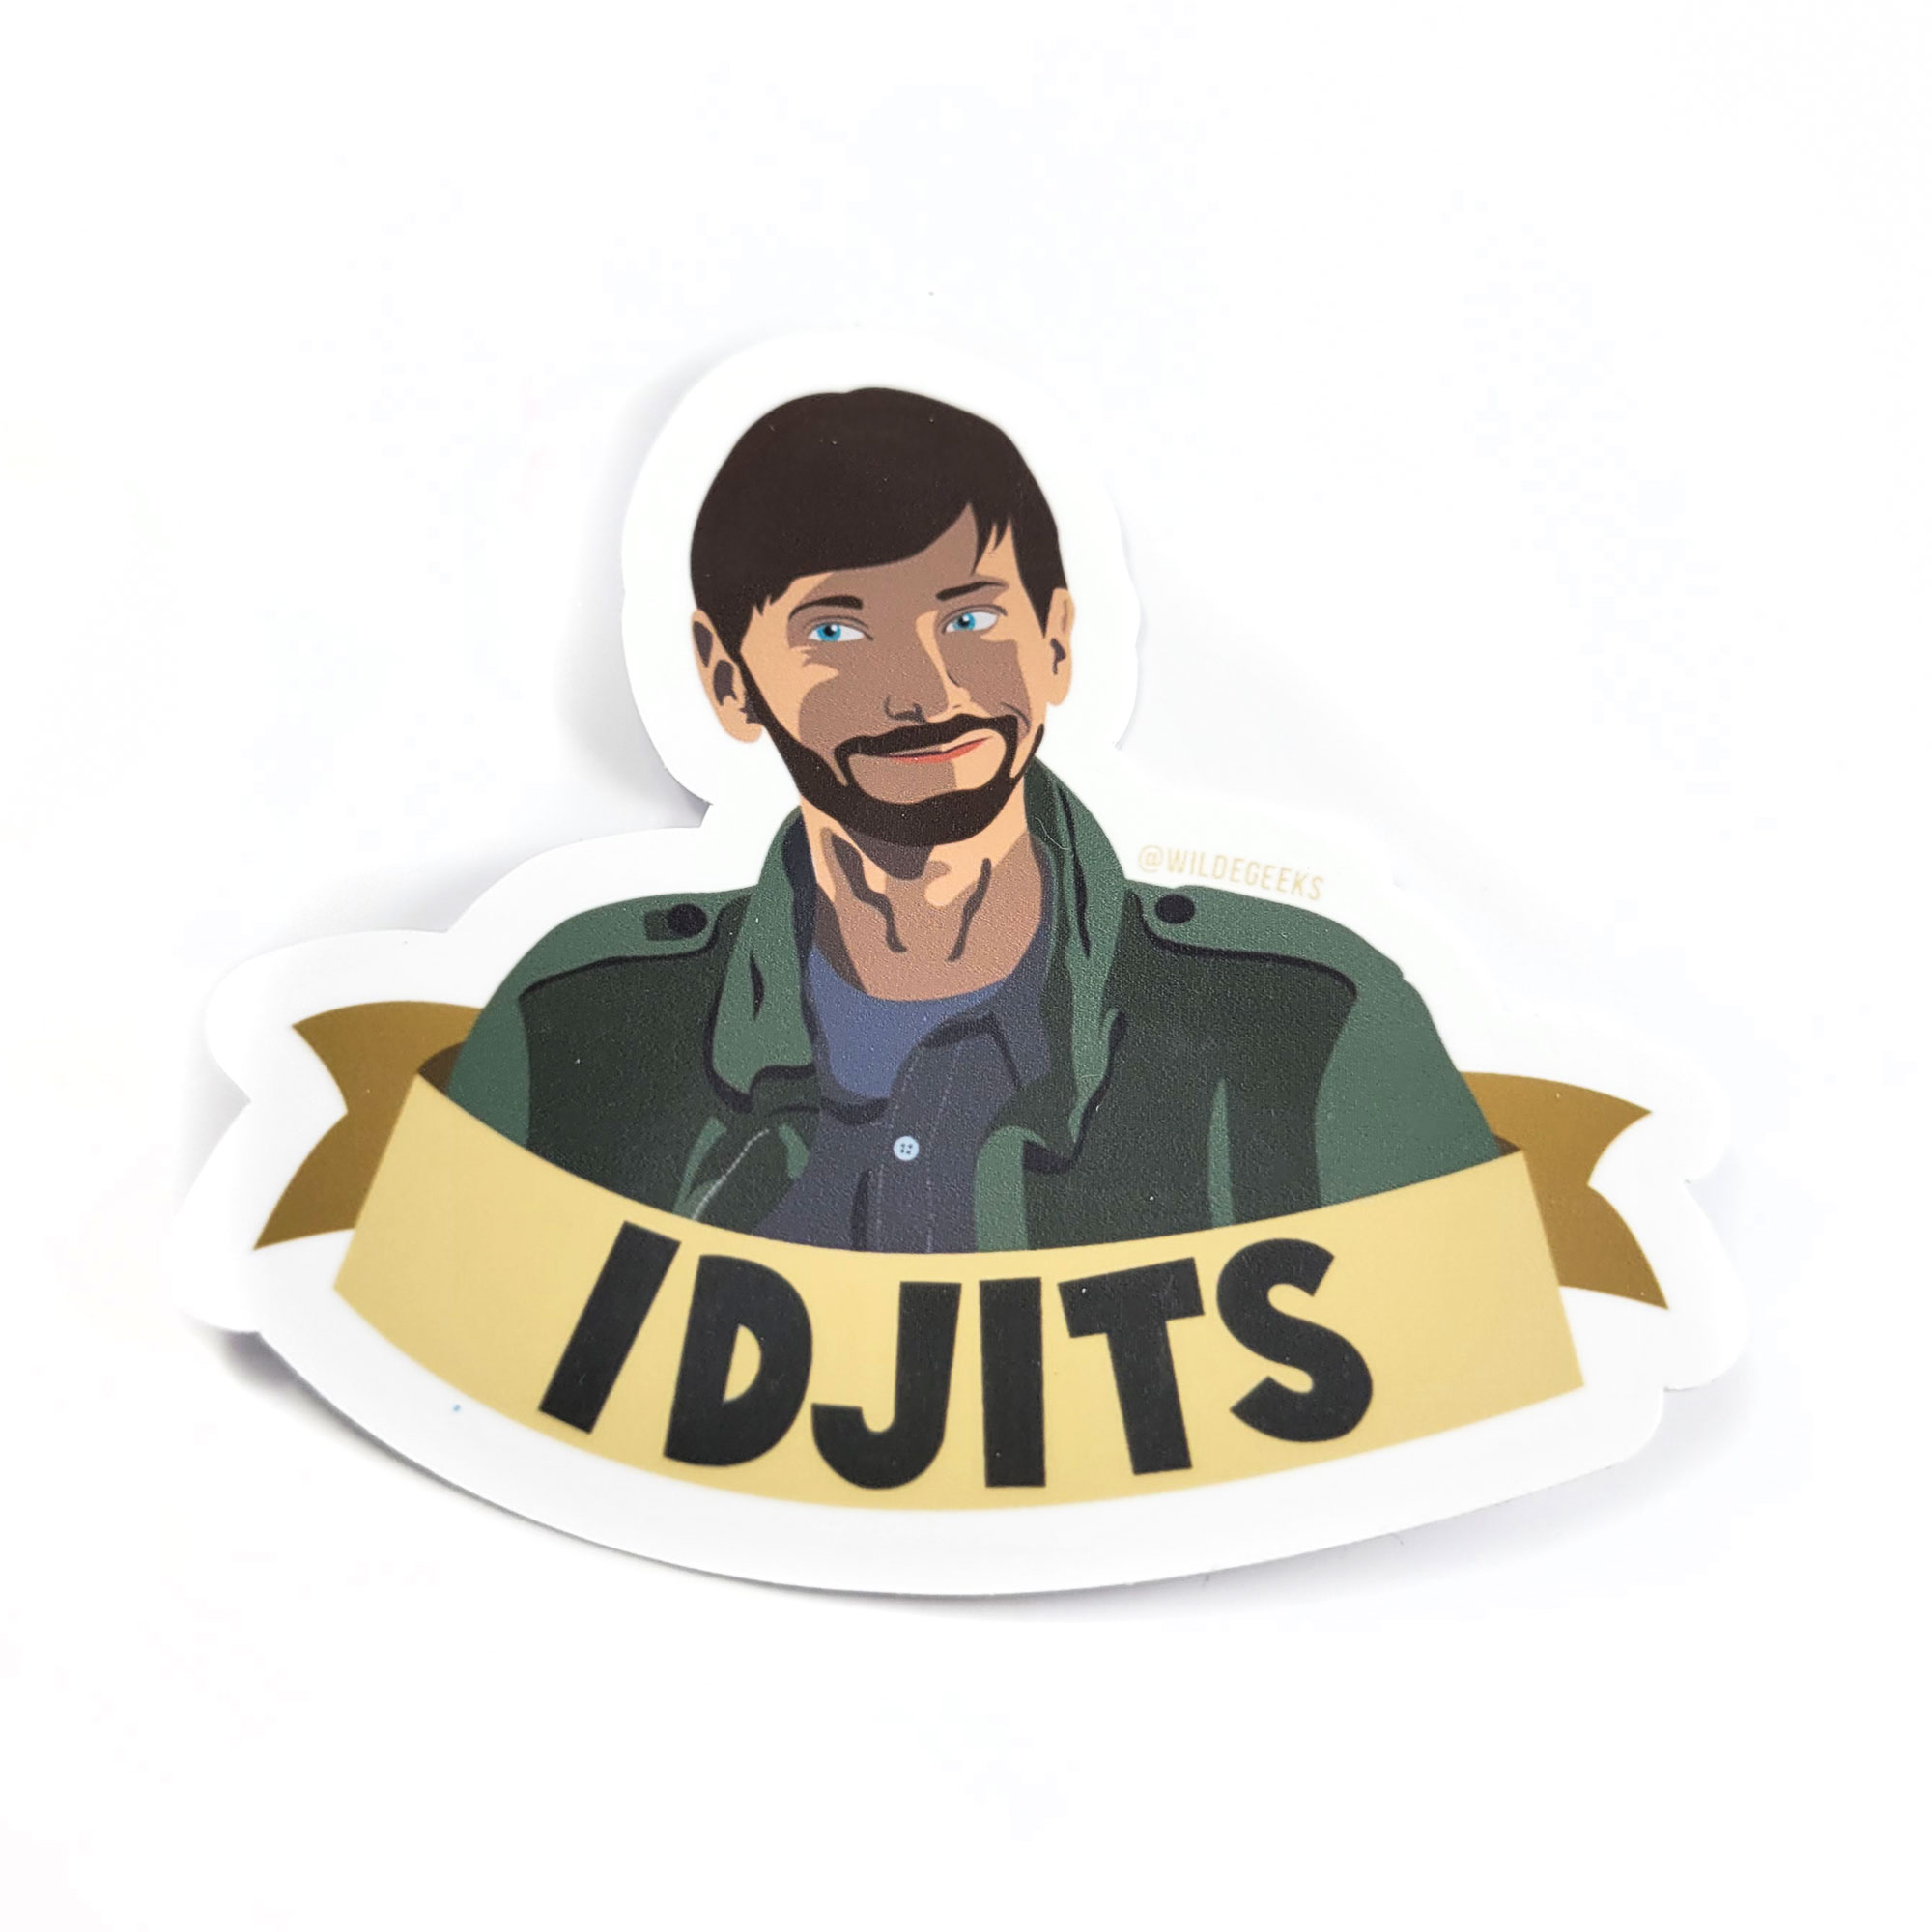 Garth Idjits Sticker by Wilde Designs